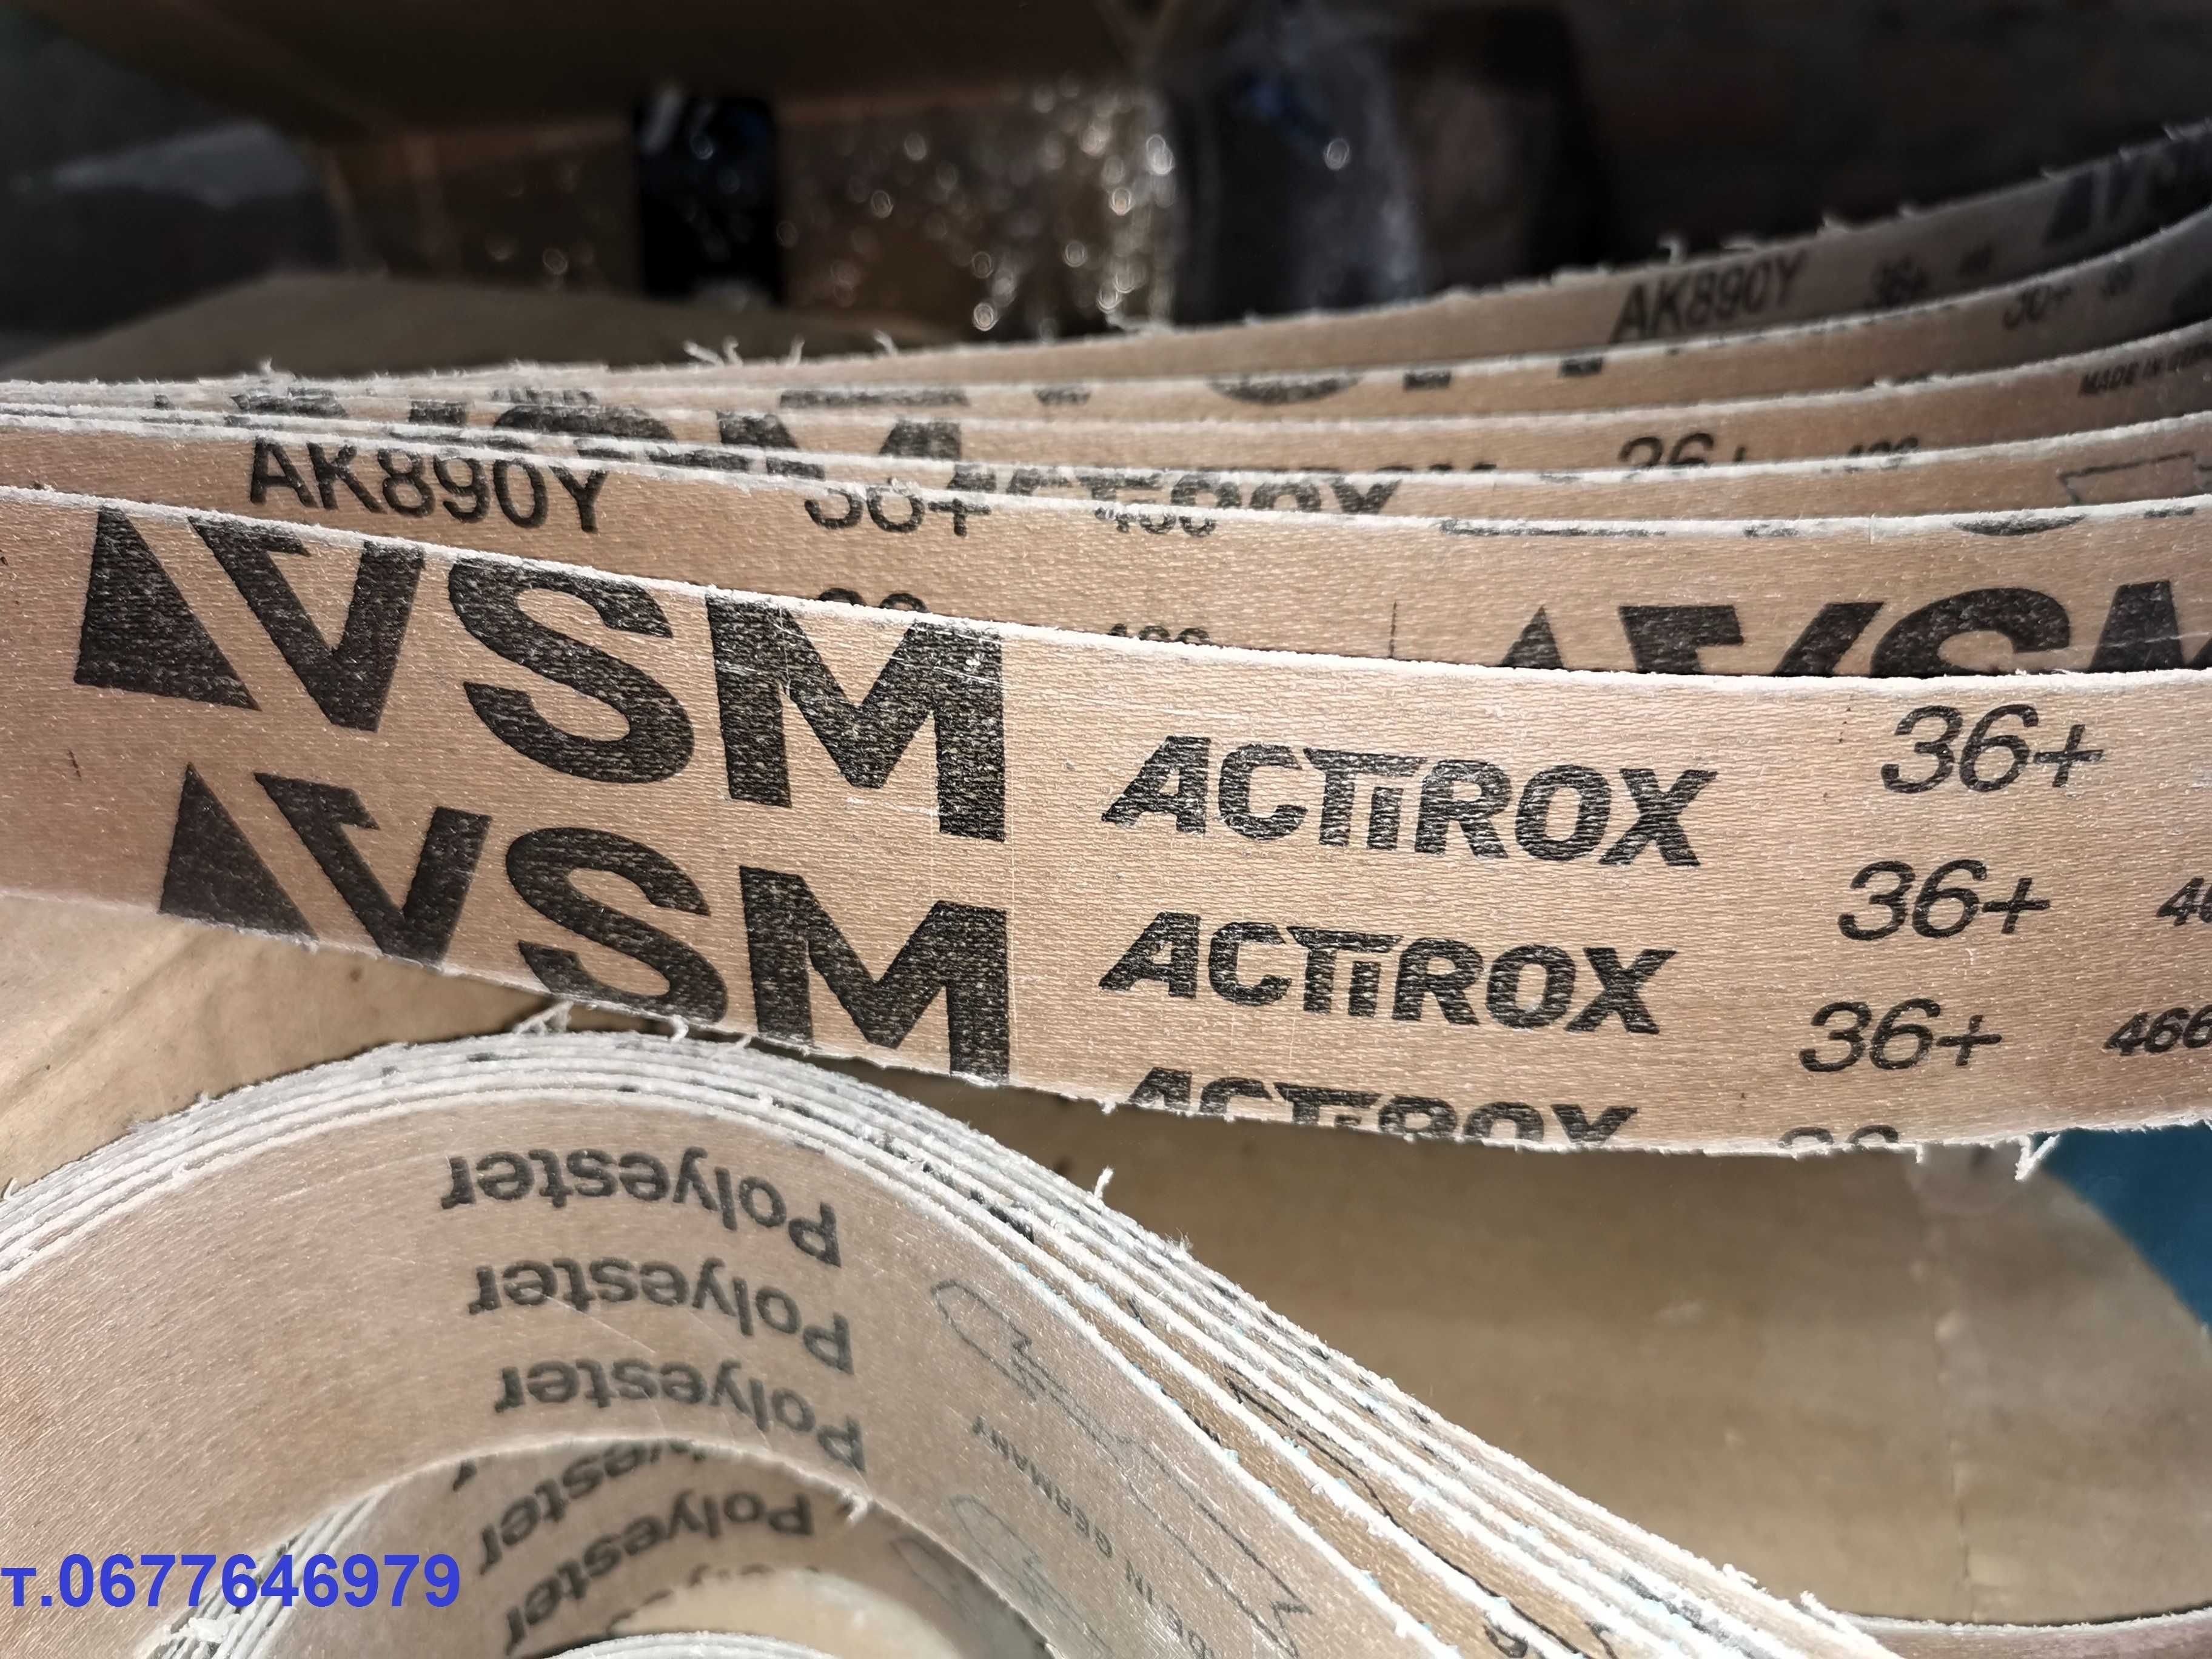 Шлифовальная лента   VSM ACTIROX AK890Y p36 для особо твердых сталей